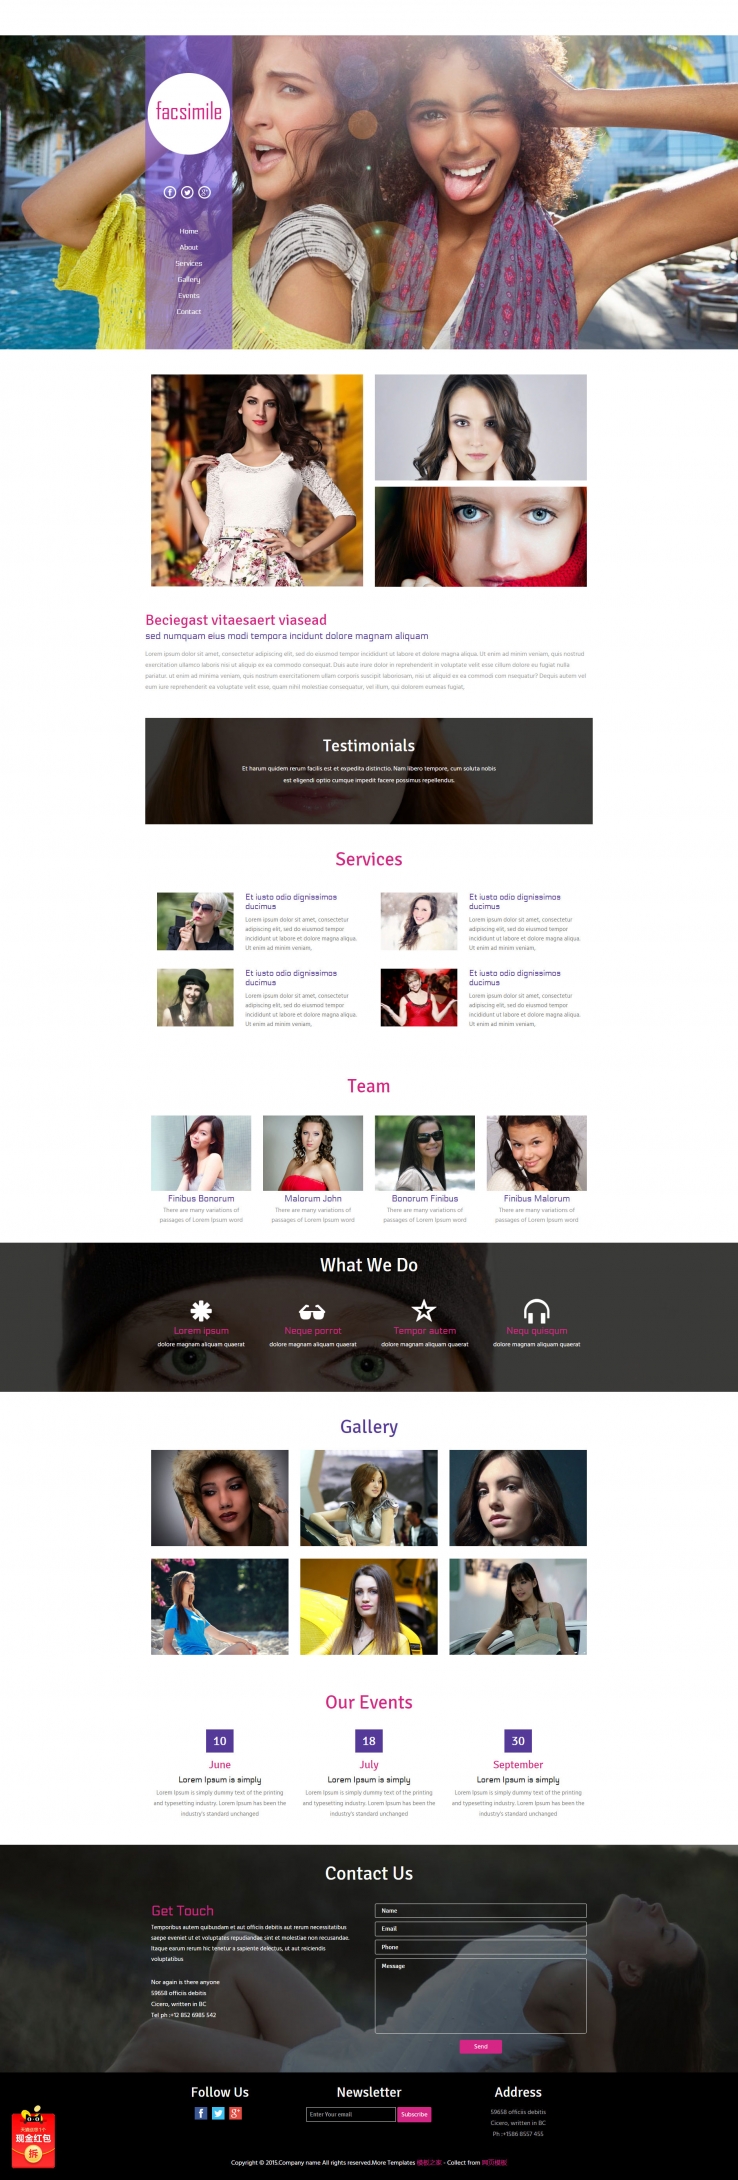 时尚紫色宽屏大气的时装模特网站模板下载